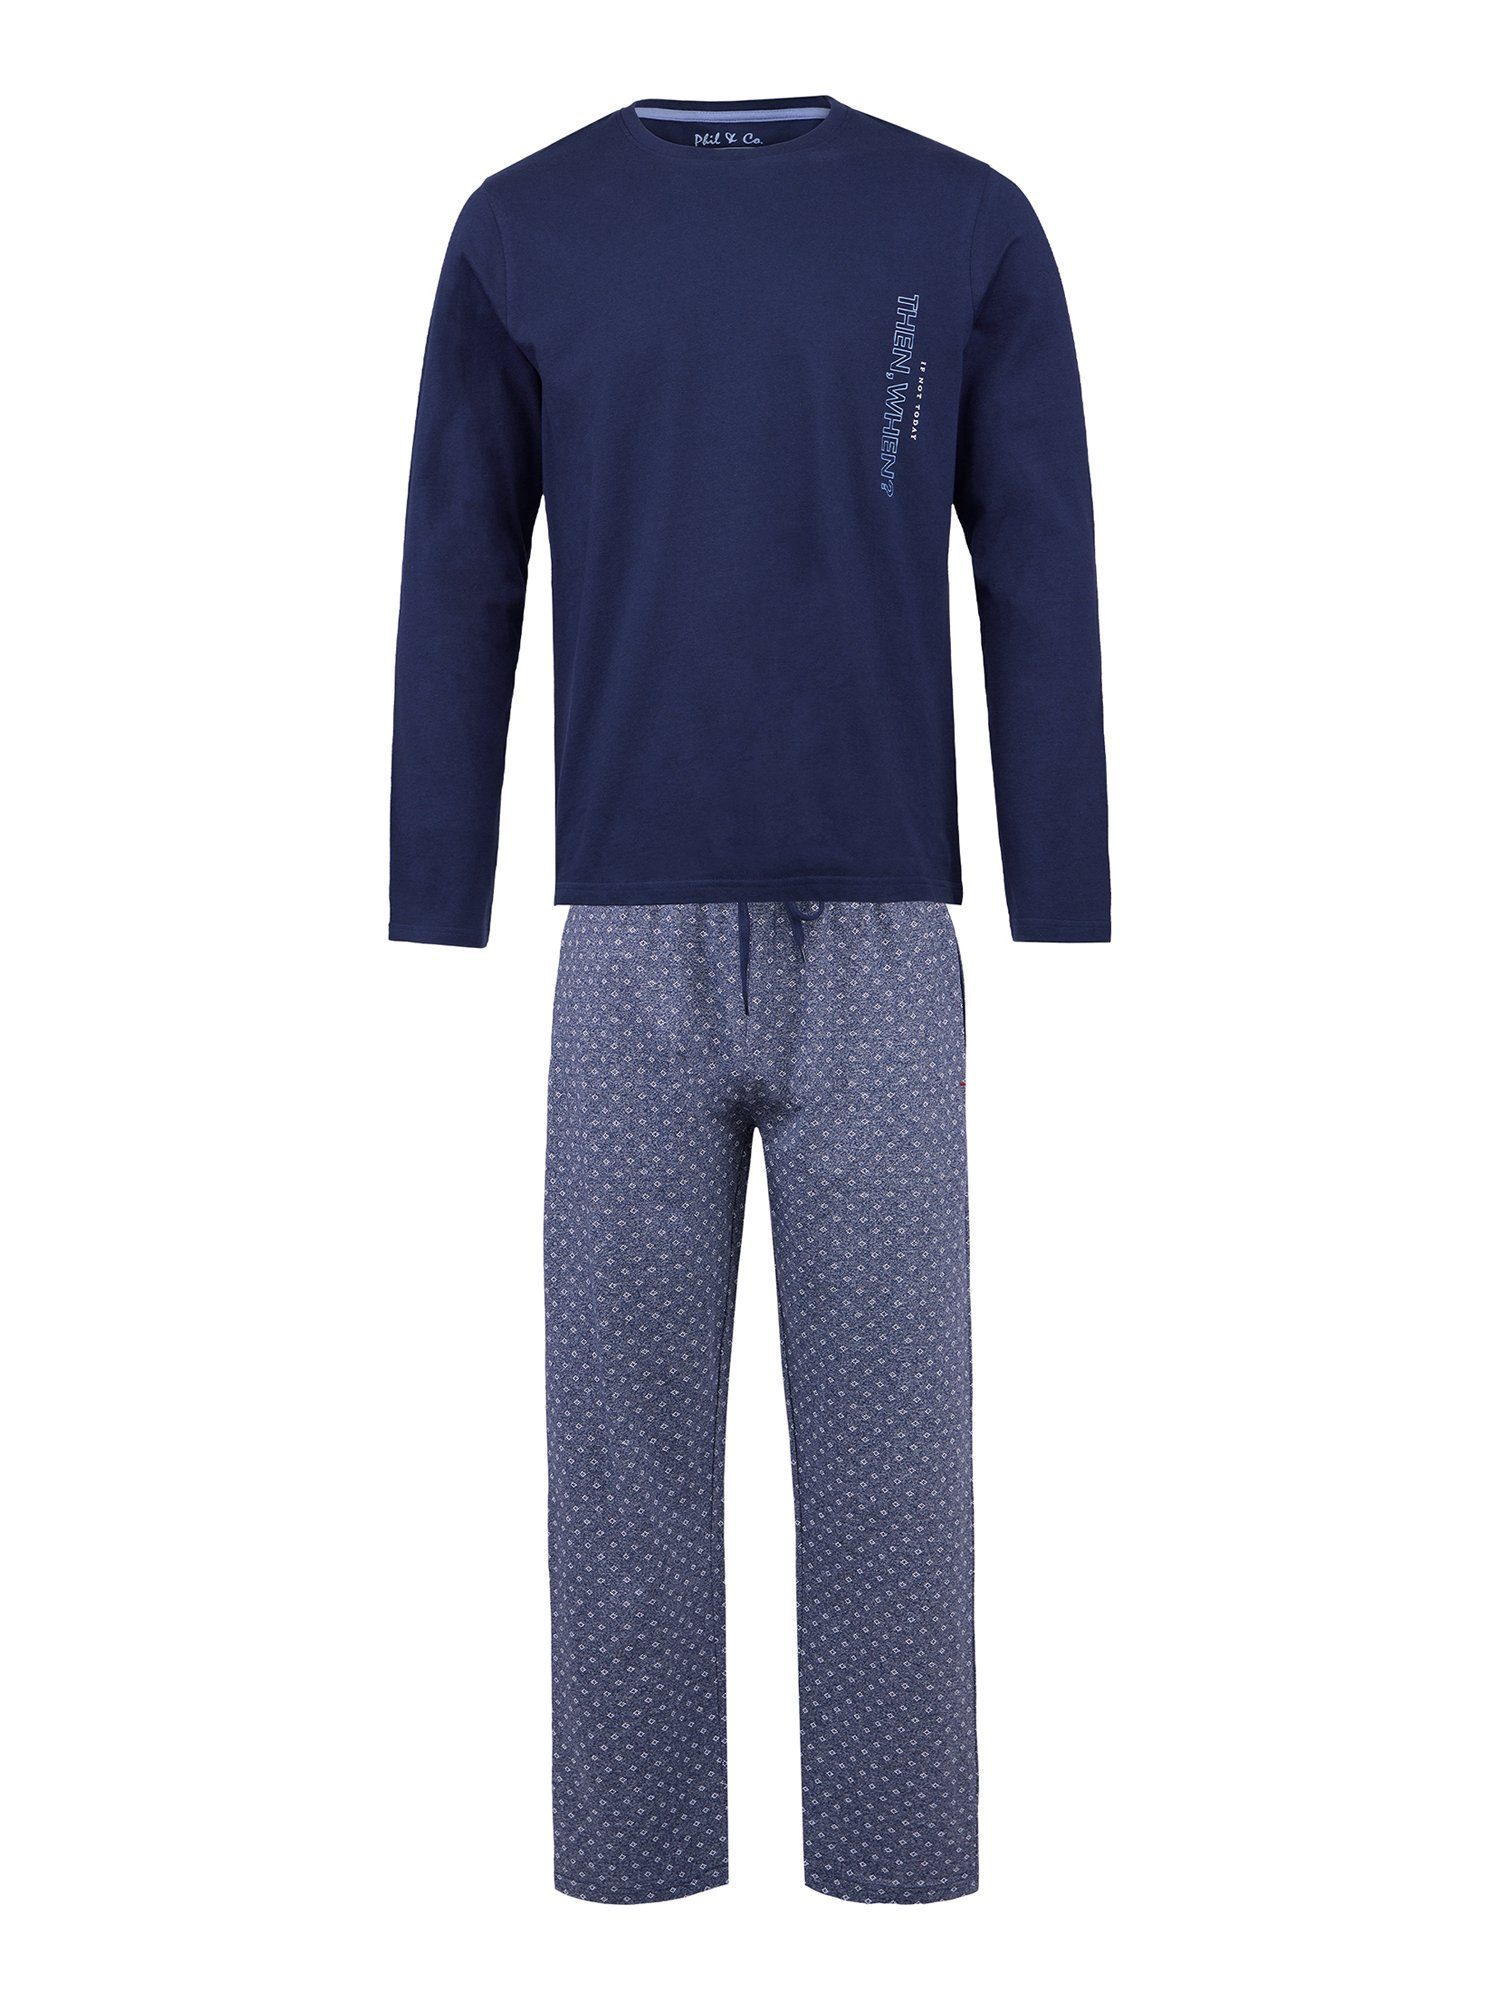 & Co. Langarm bequem Phil tlg) (1 Schlafanzug Pyjama blau-grau Special